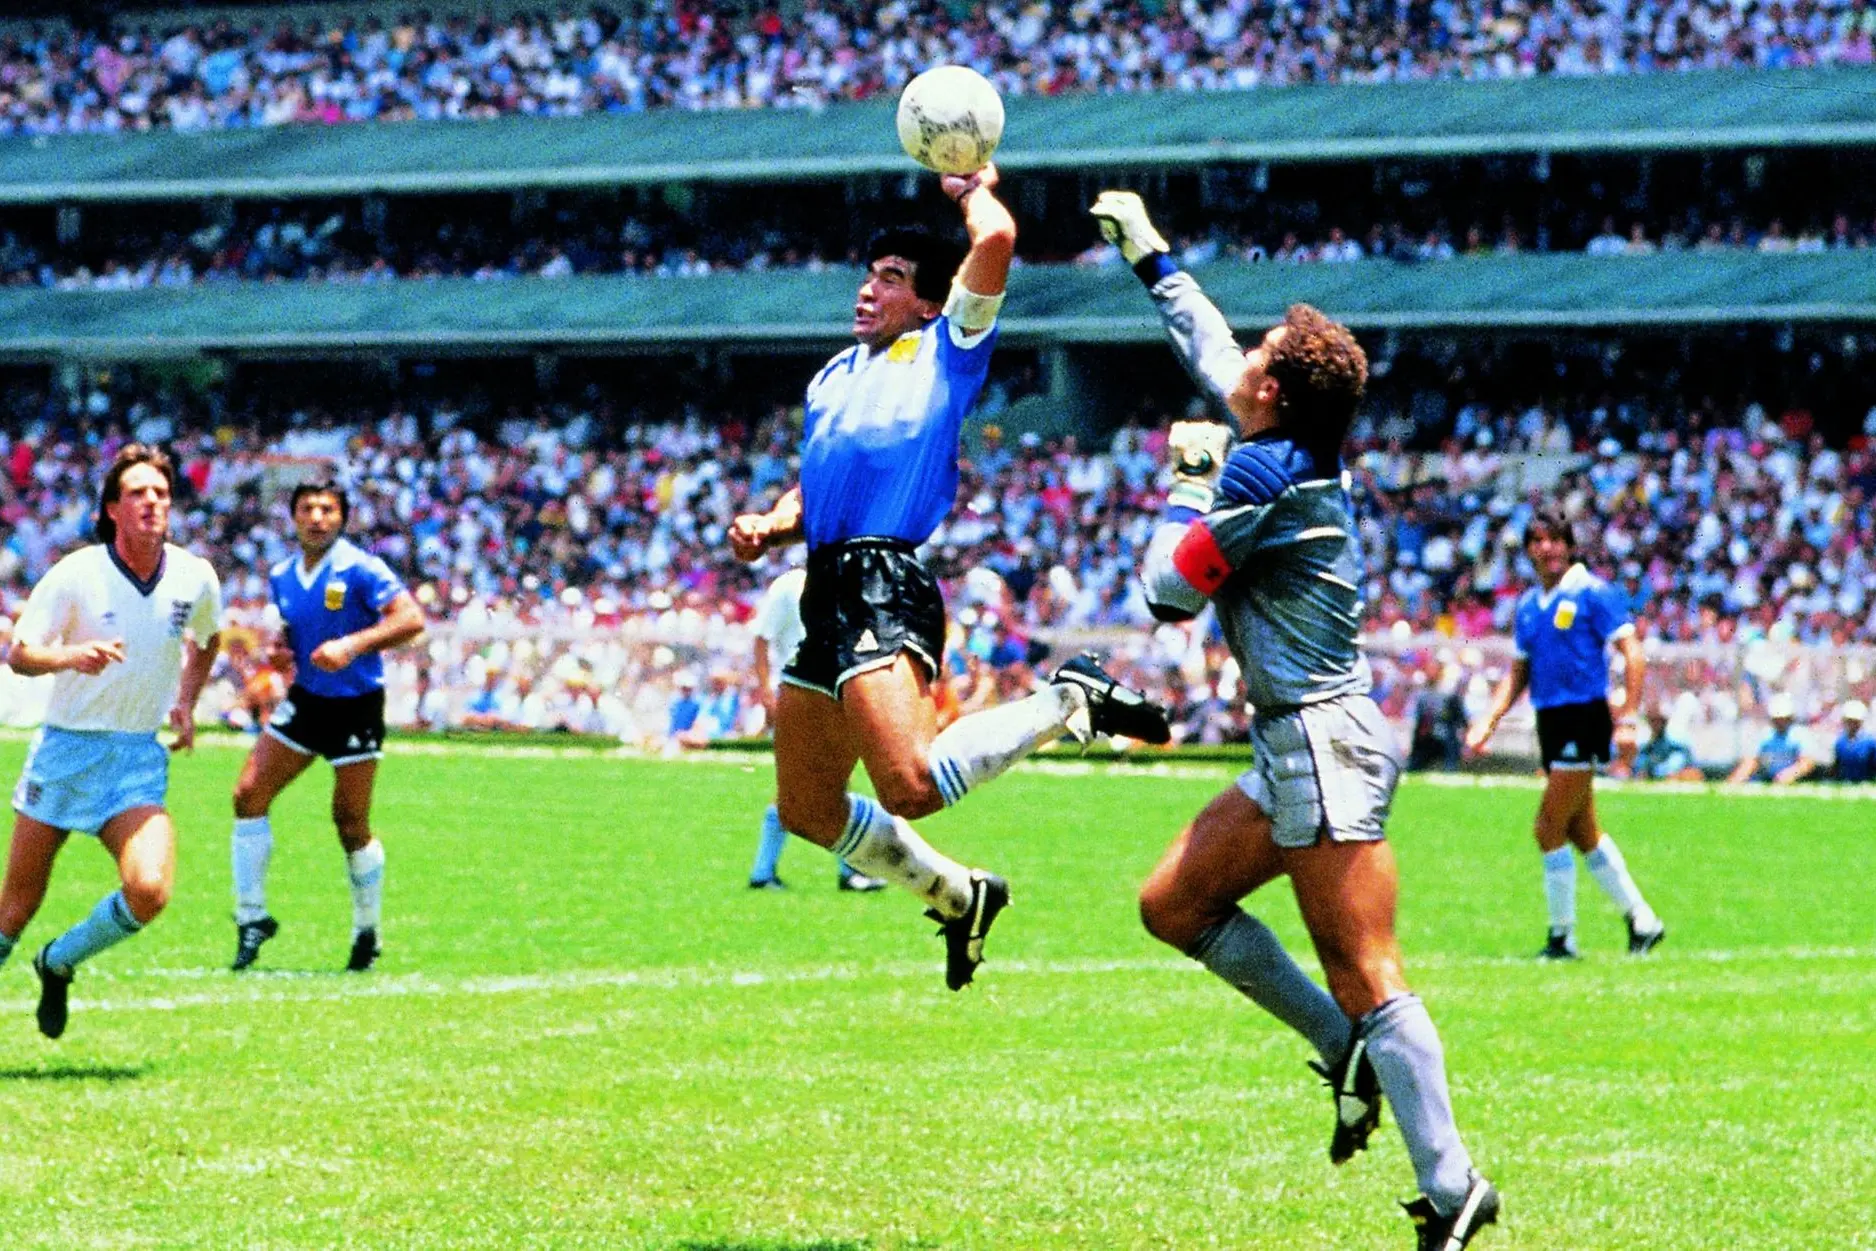 La mano de Dios, il famoso gol all'Inghilterra ai Mondiali in Messico del 1986